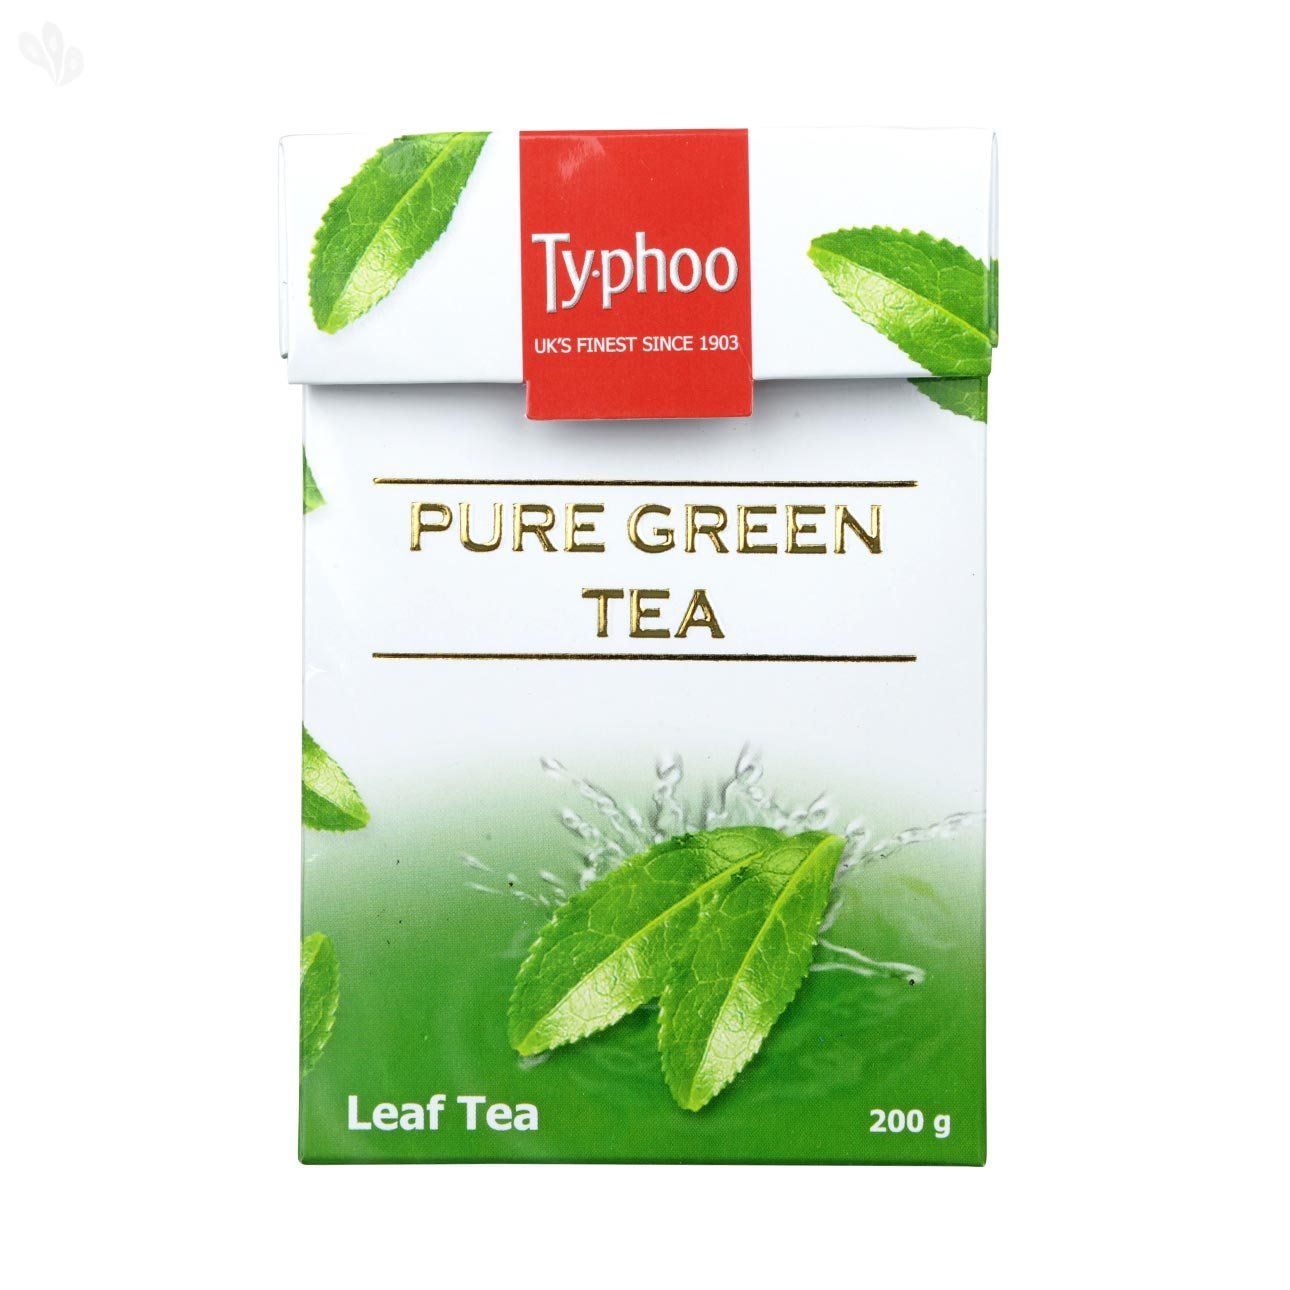 Typhoo Pure Green Tea Leaf Loose Image